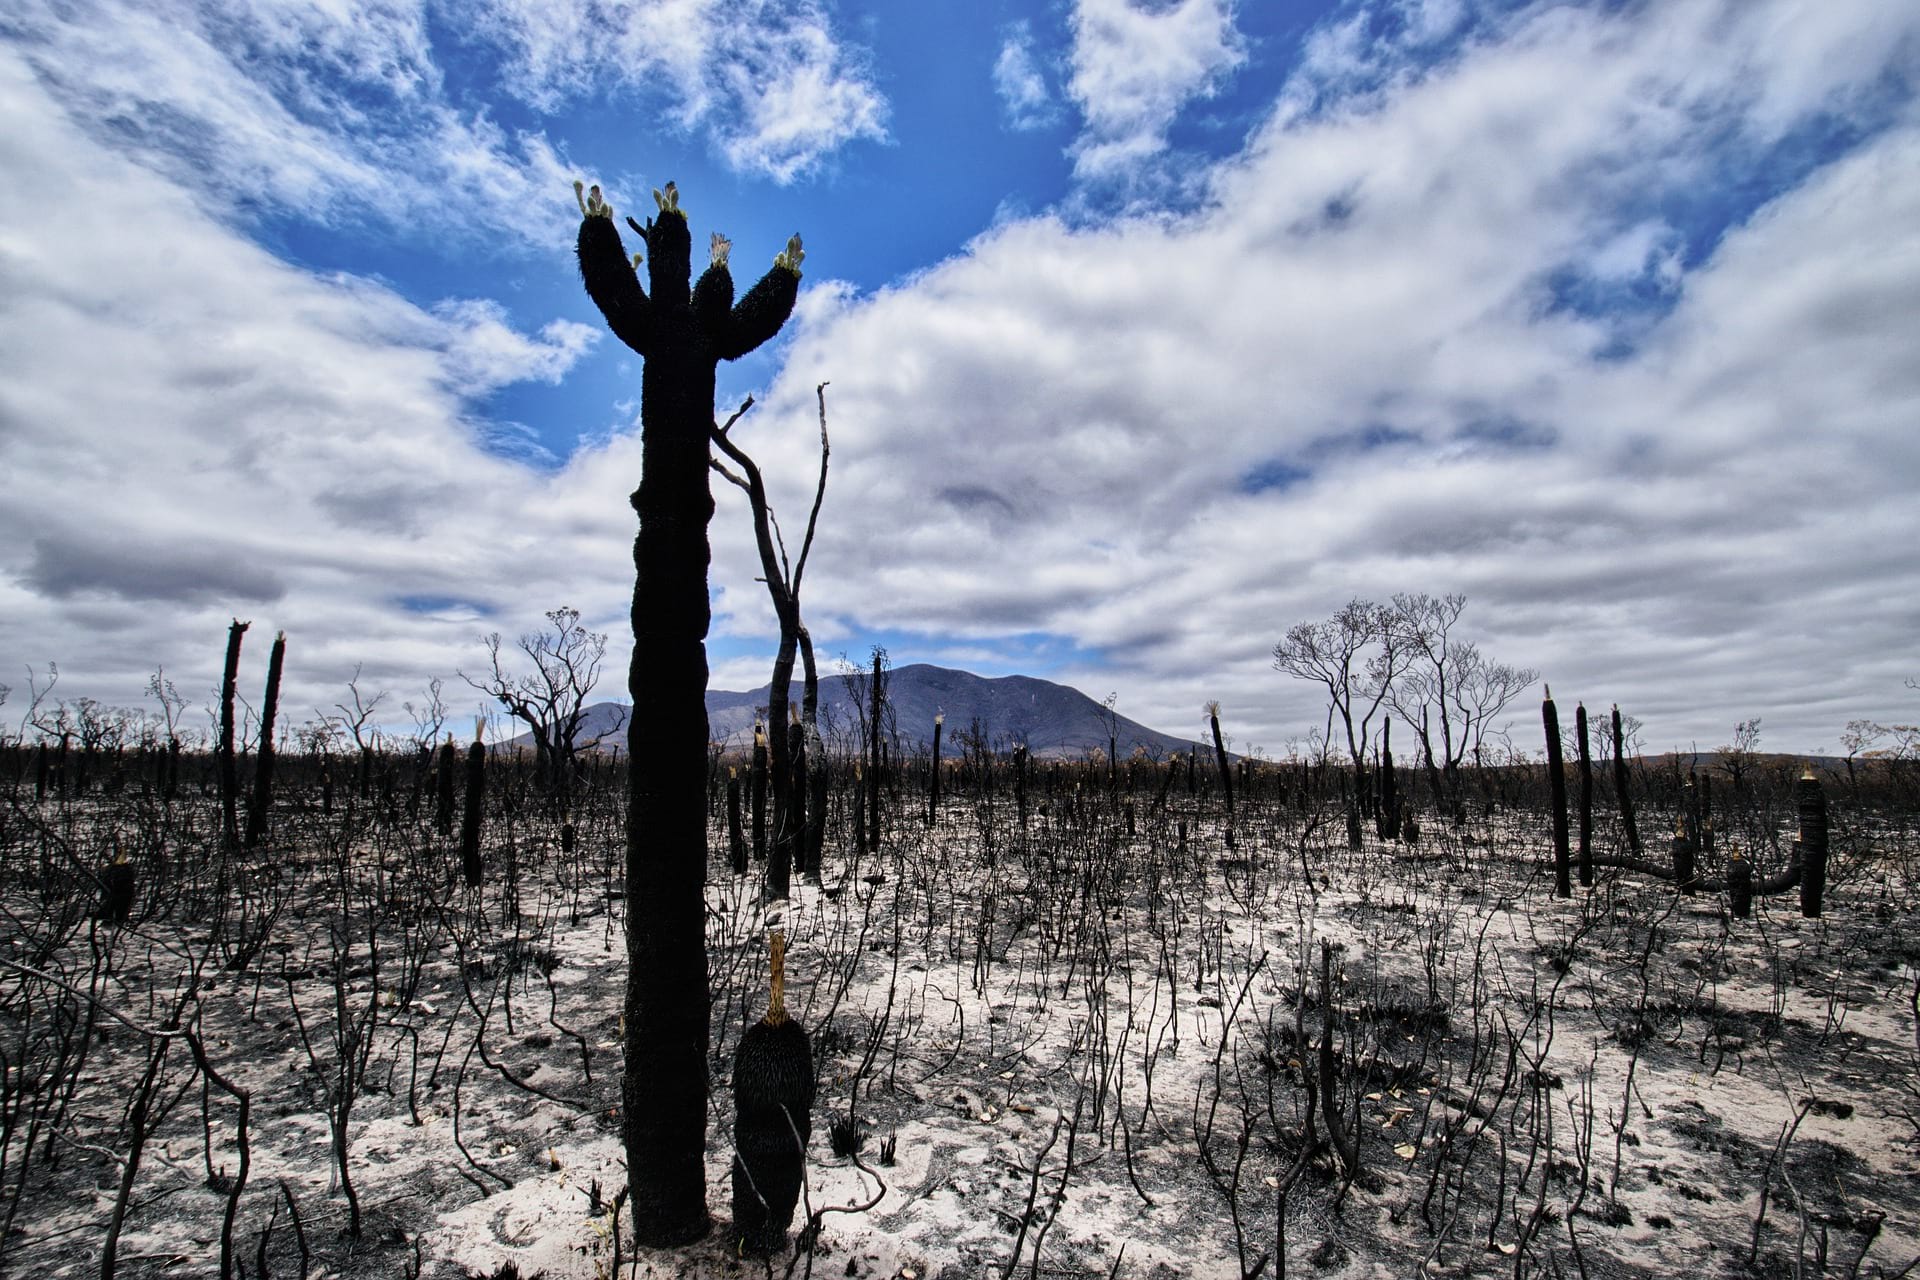 A bushfire-razed piece of land in the Australian countryside